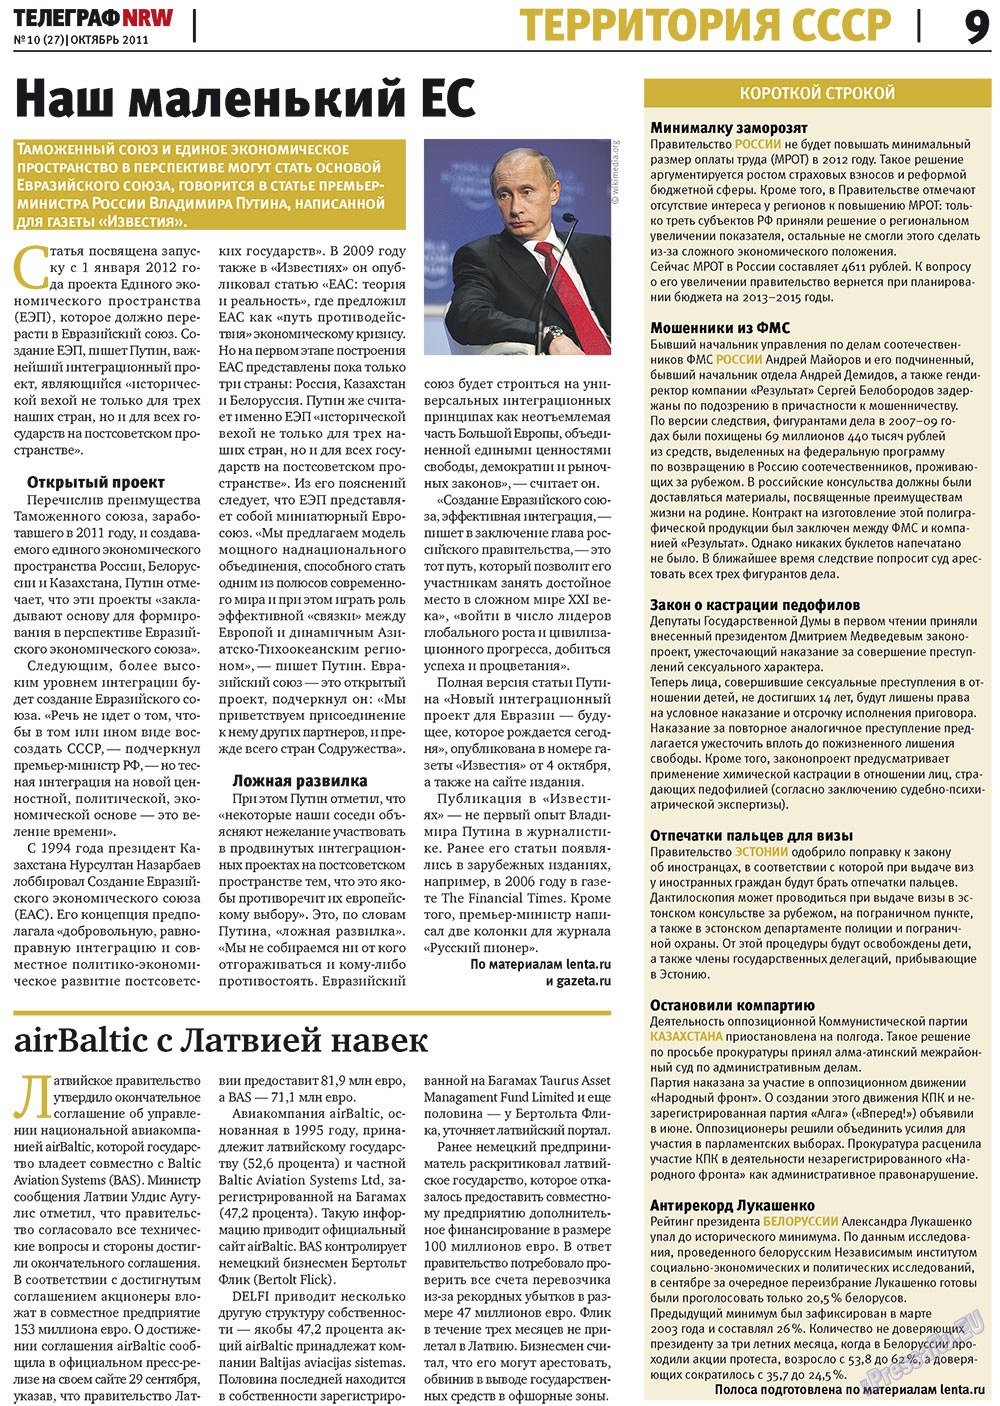 Телеграф NRW (газета). 2011 год, номер 10, стр. 9